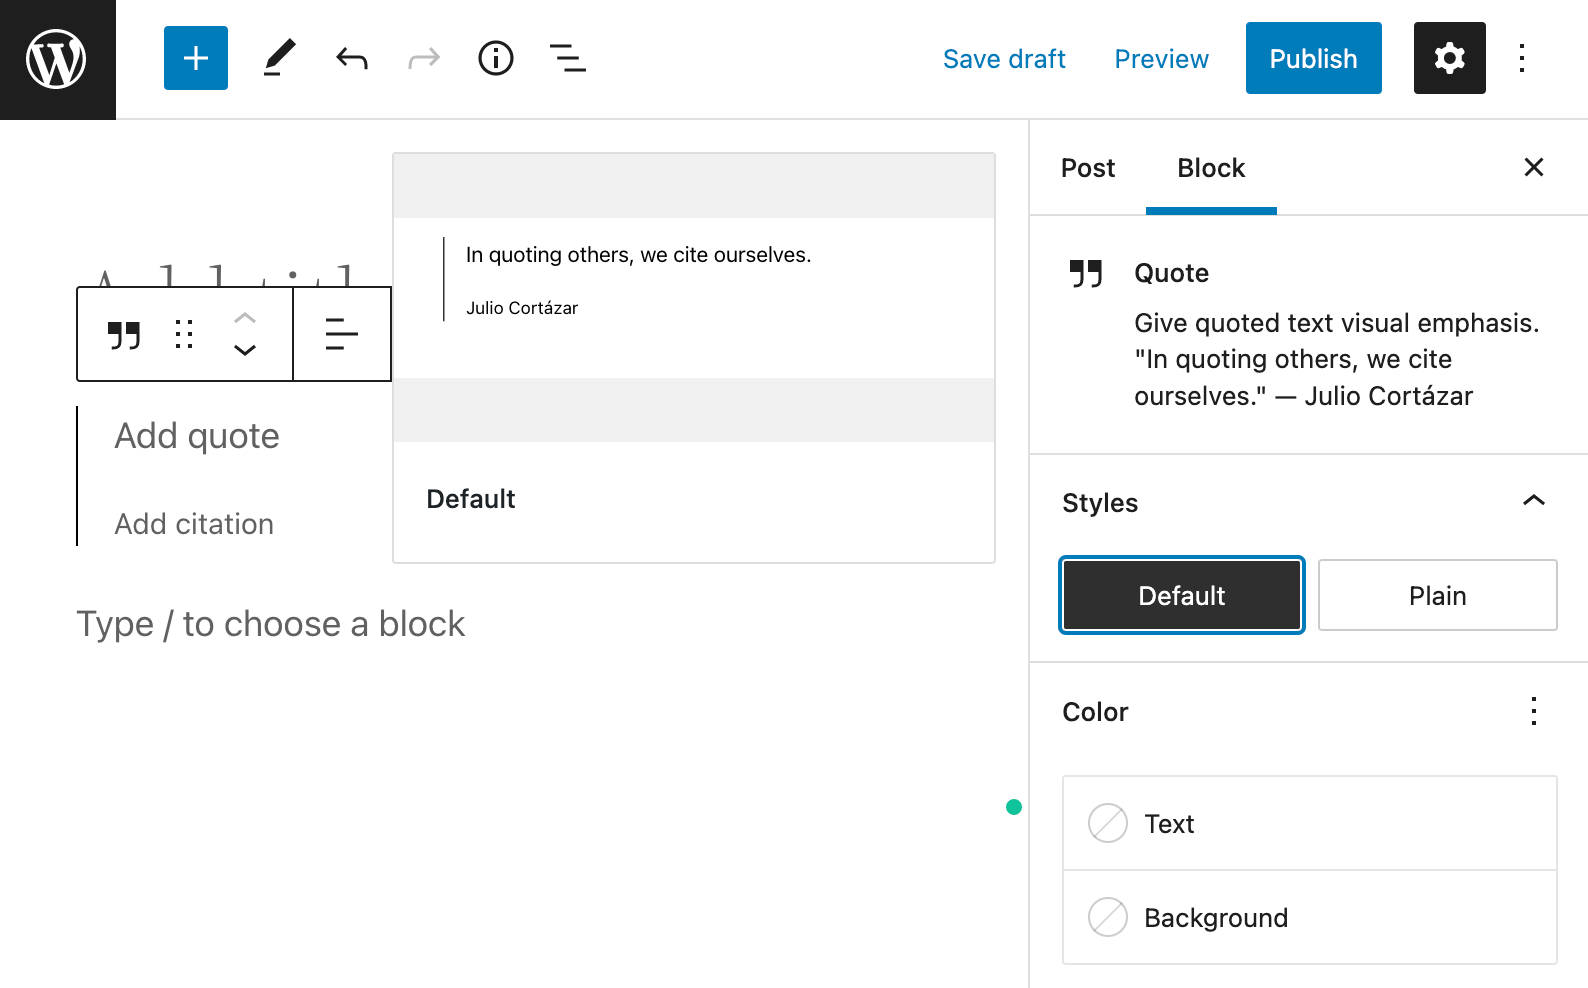 Blokstijl preview in WordPress 6.0.